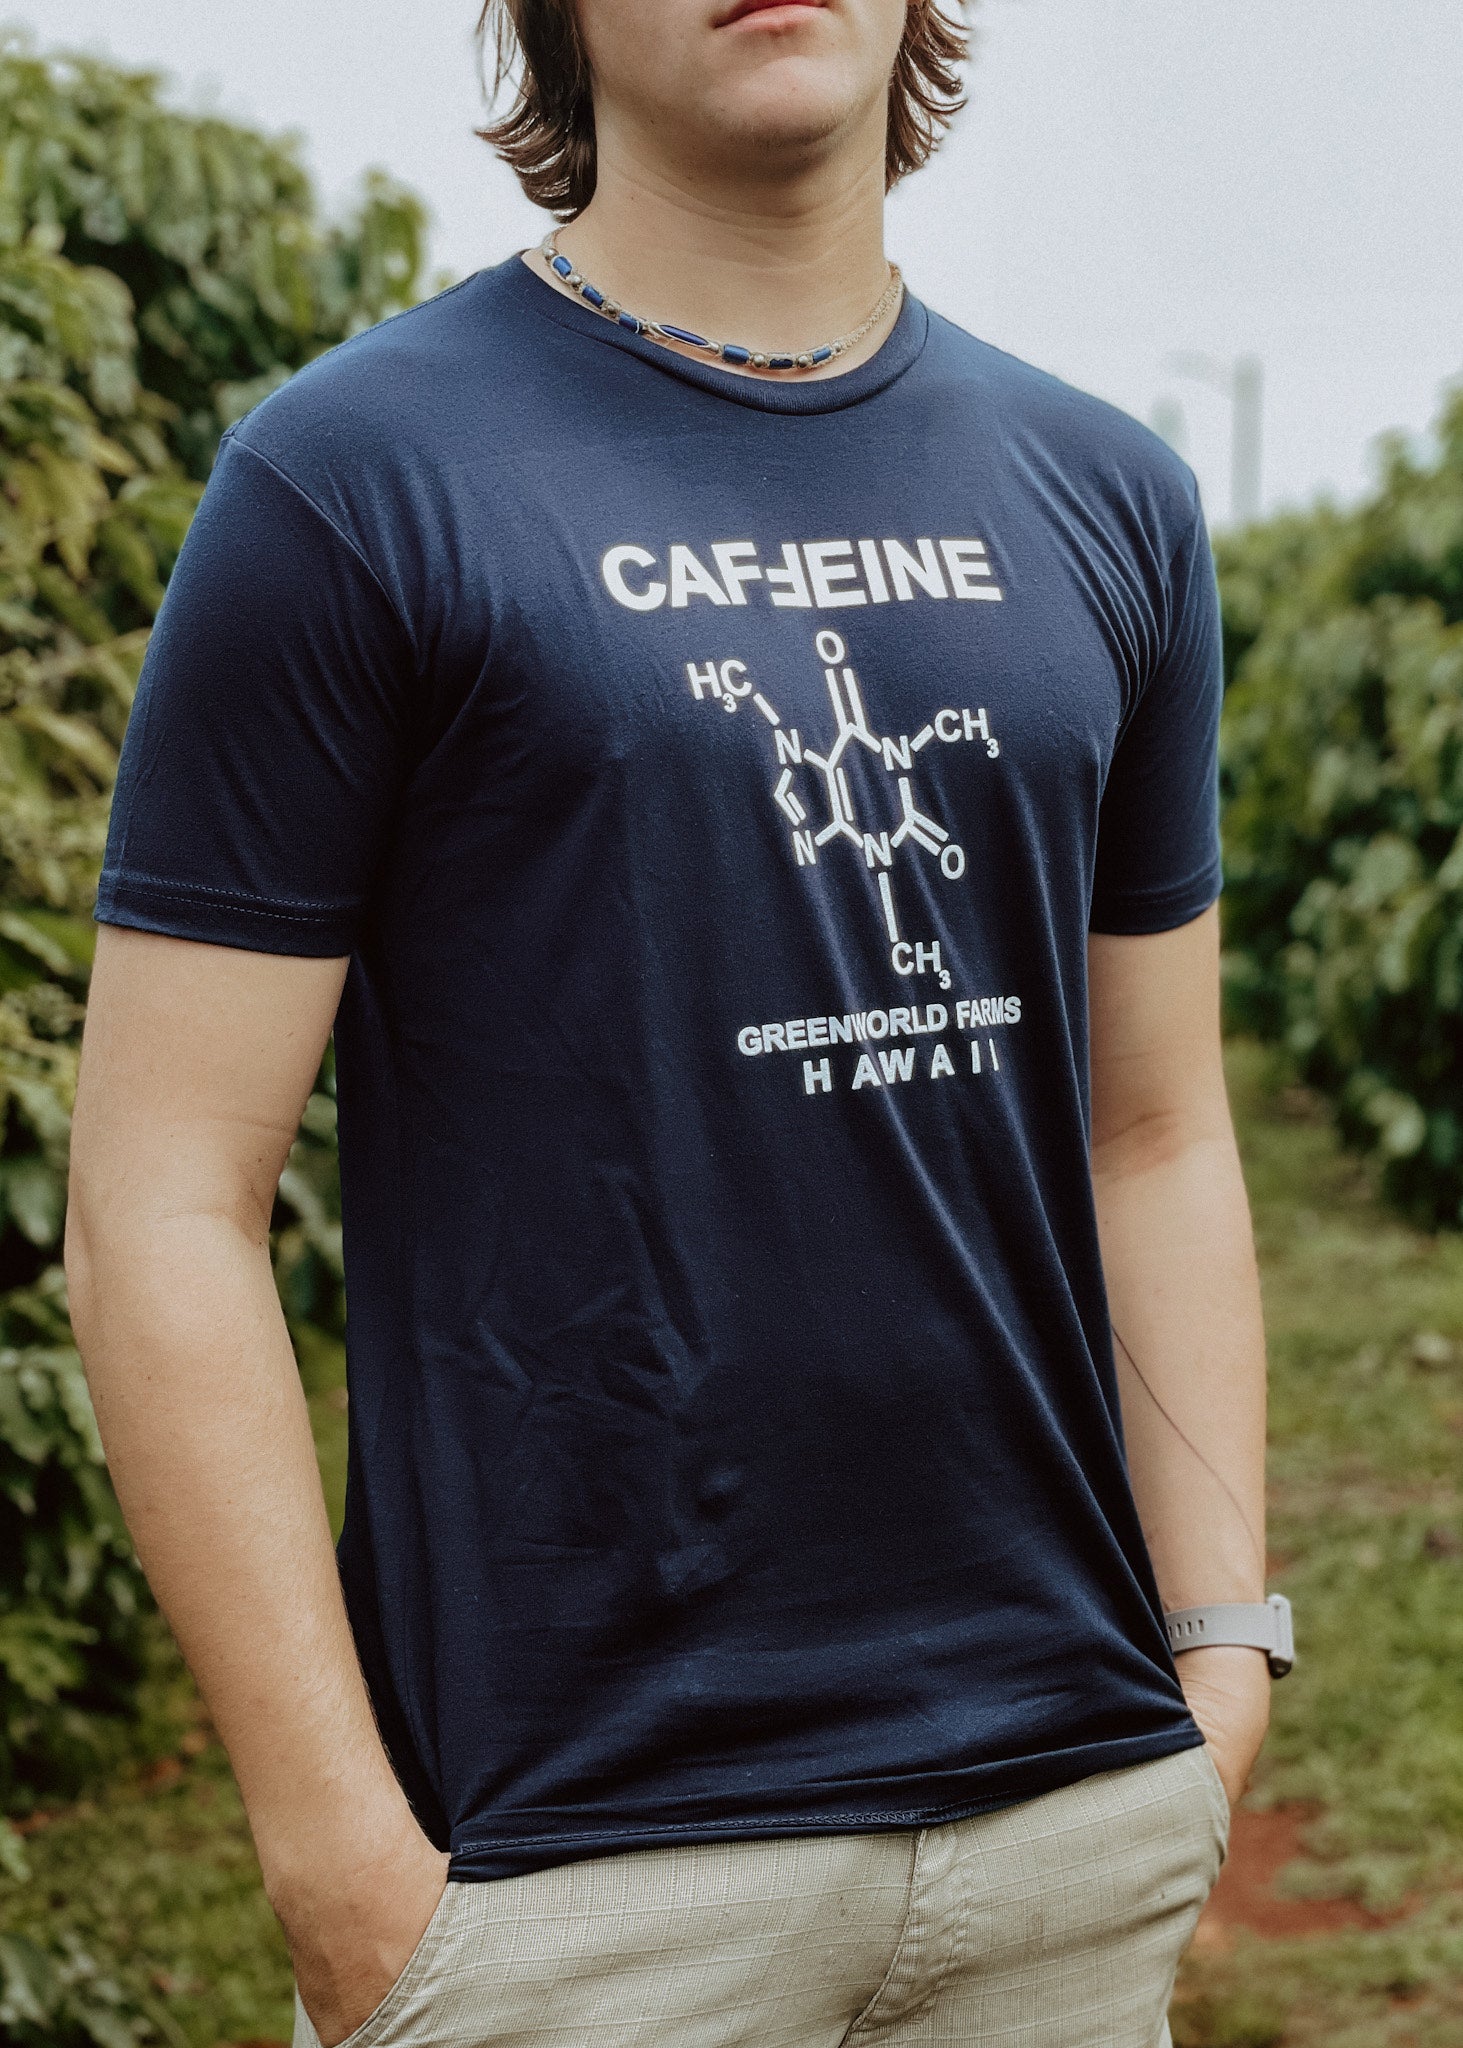 Pastel Caffeine Molecule Mugs – Green World Coffee Farm